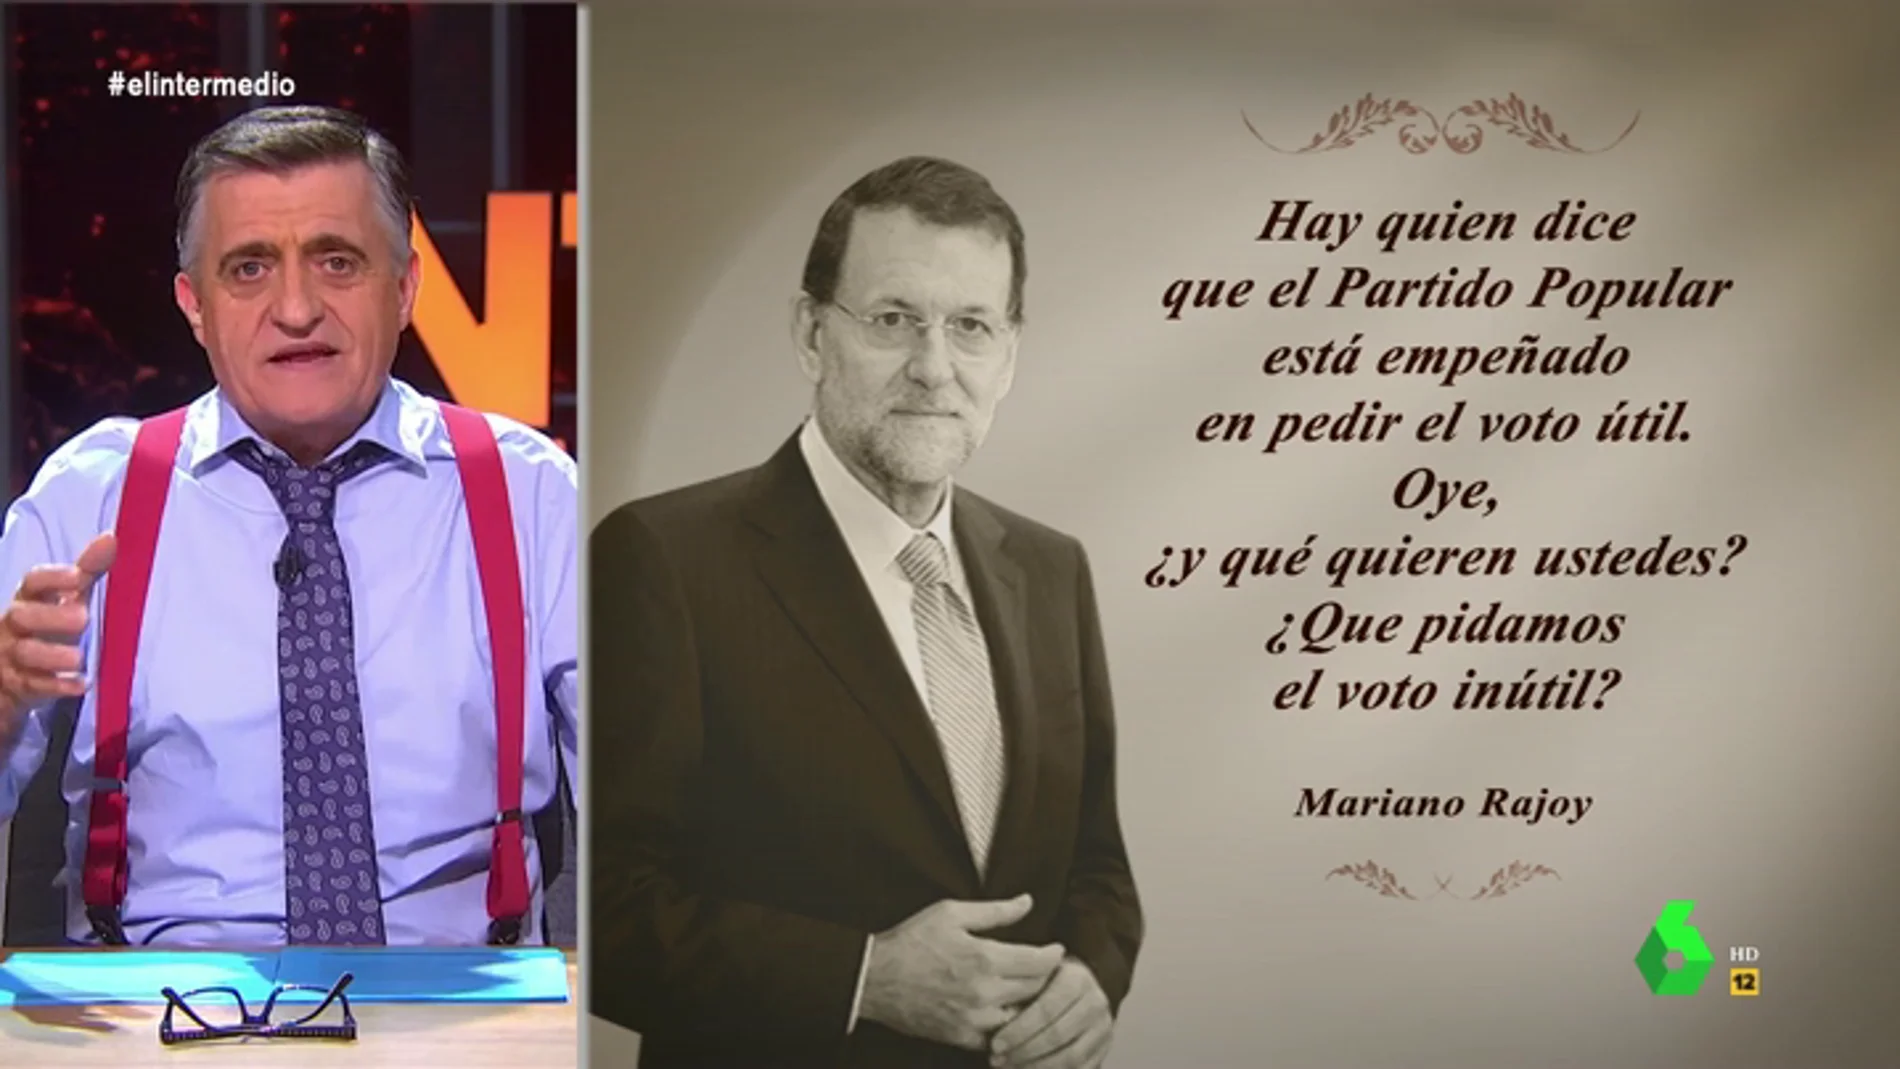 Esta es la nueva "cita célebre" de Mariano Rajoy sobre "el voto inútil"